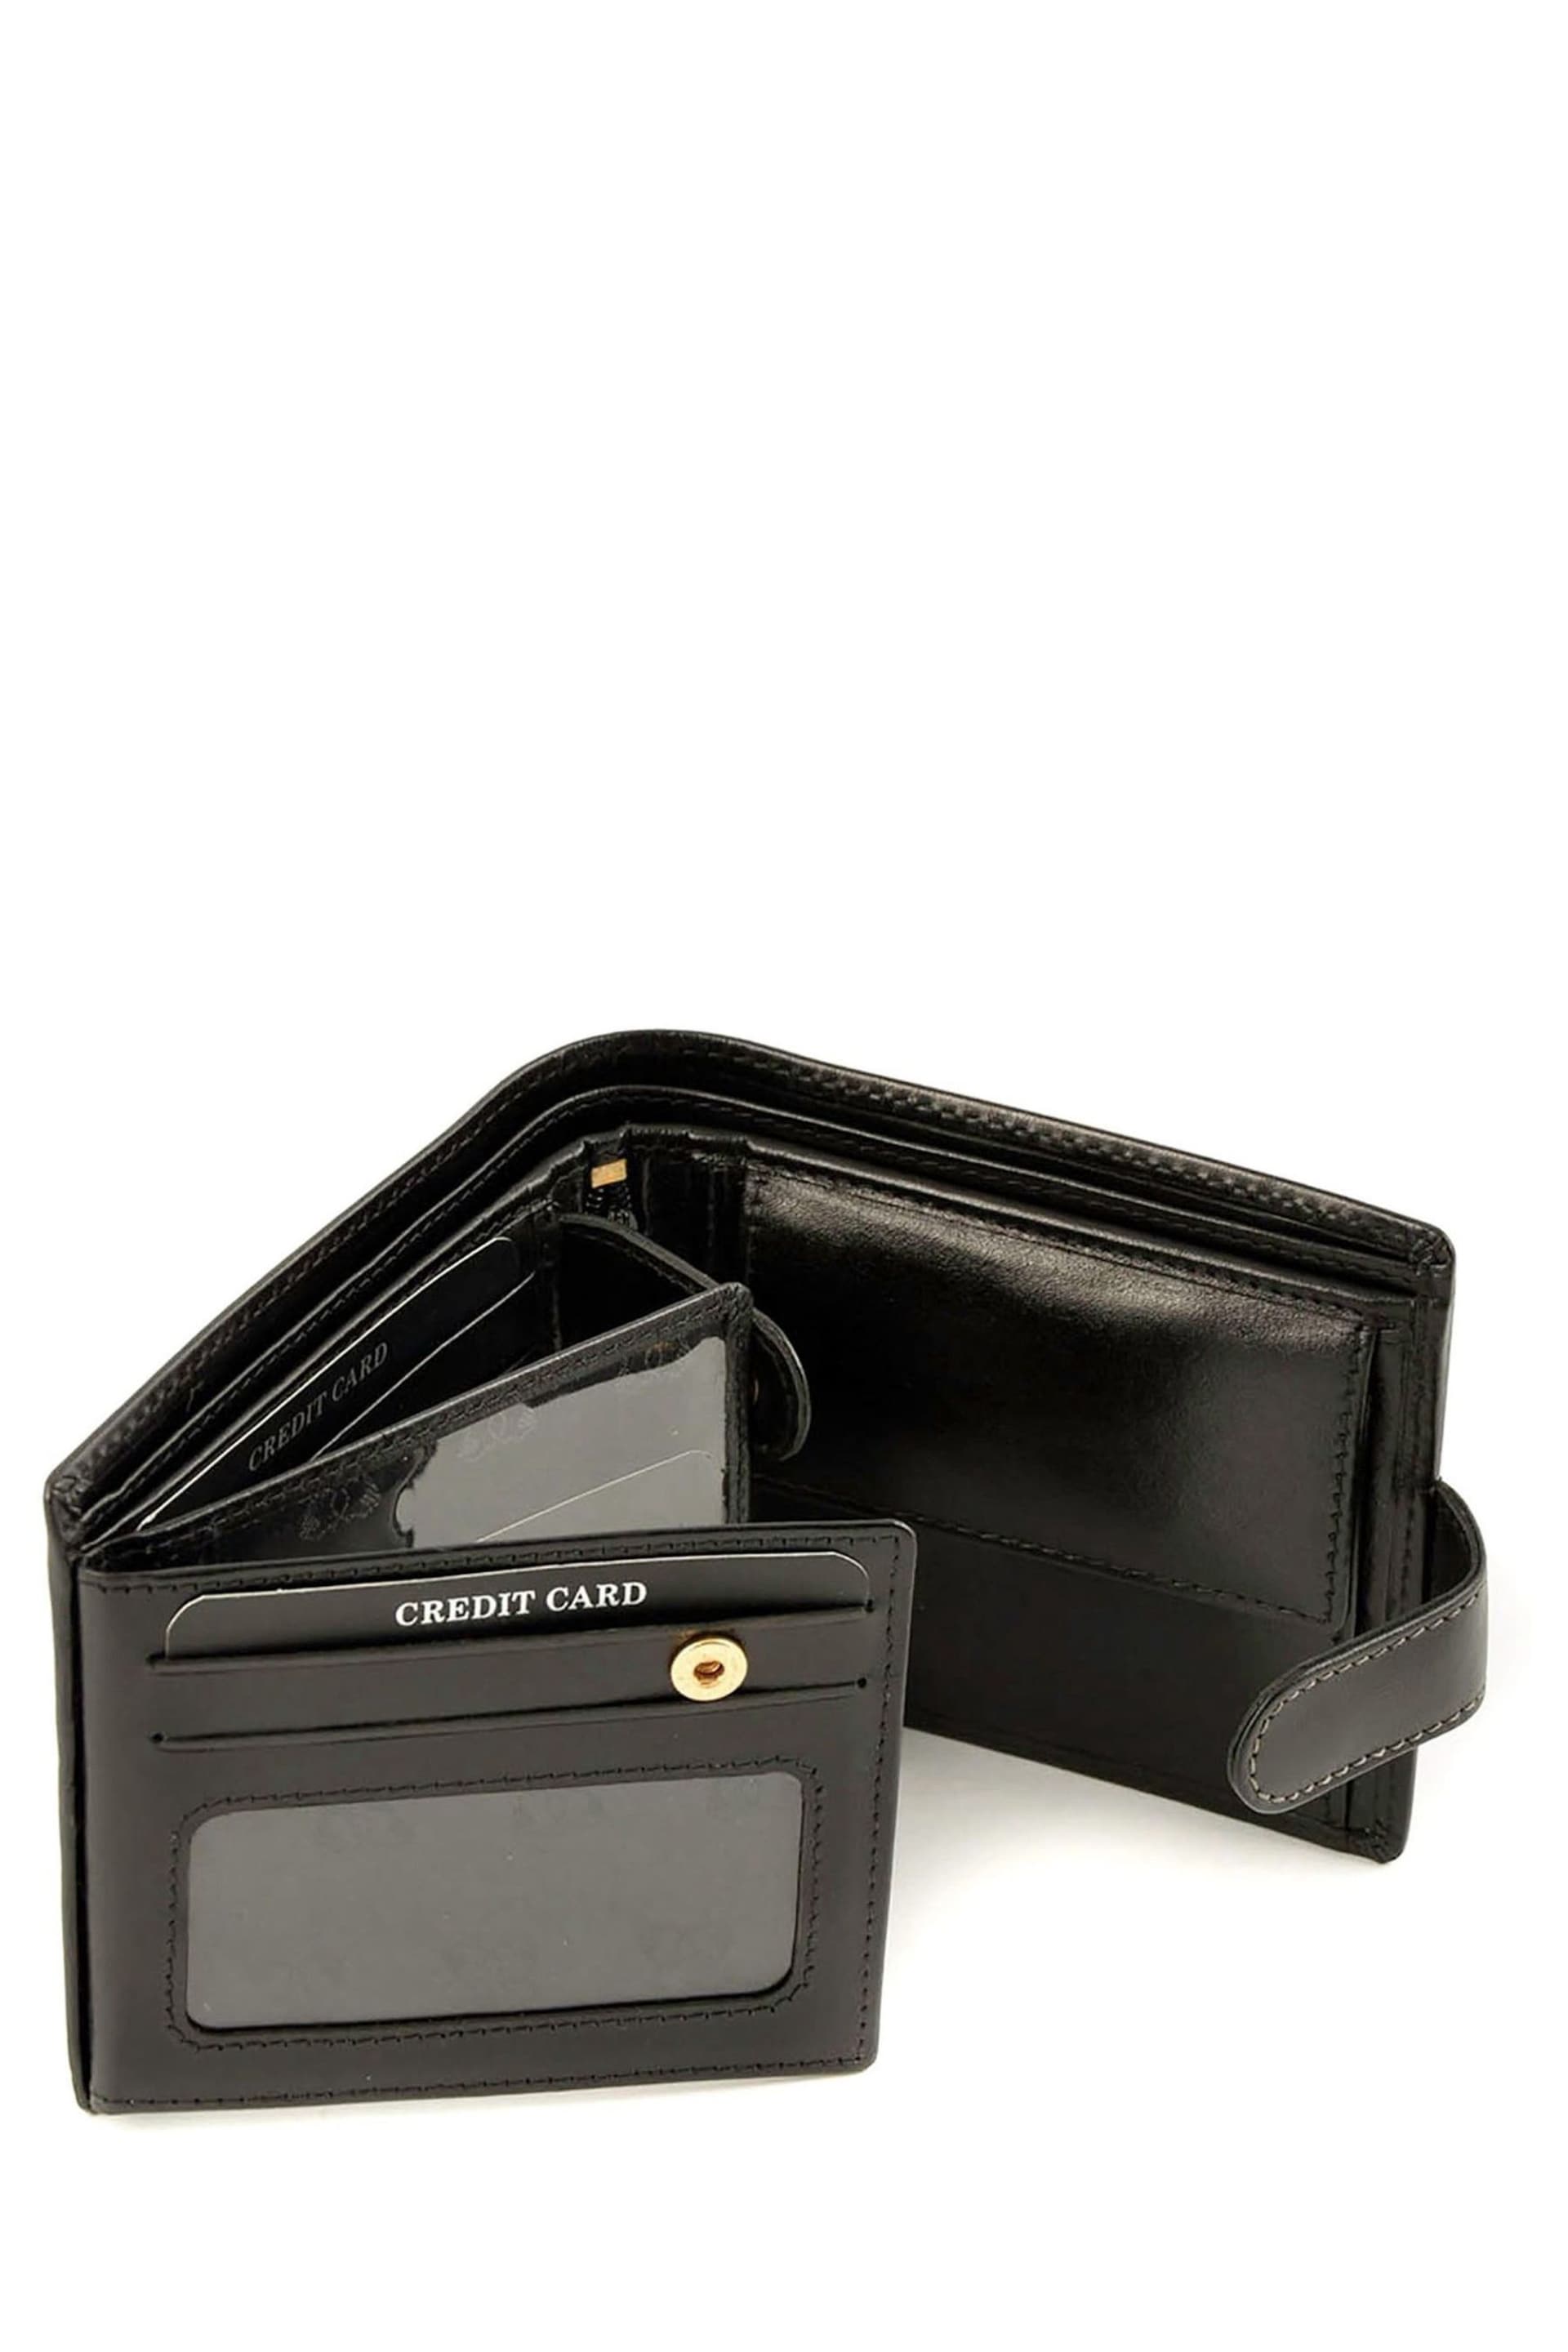 Lakeland Leather Ascari Leather Tri-Fold Wallet - Image 5 of 5